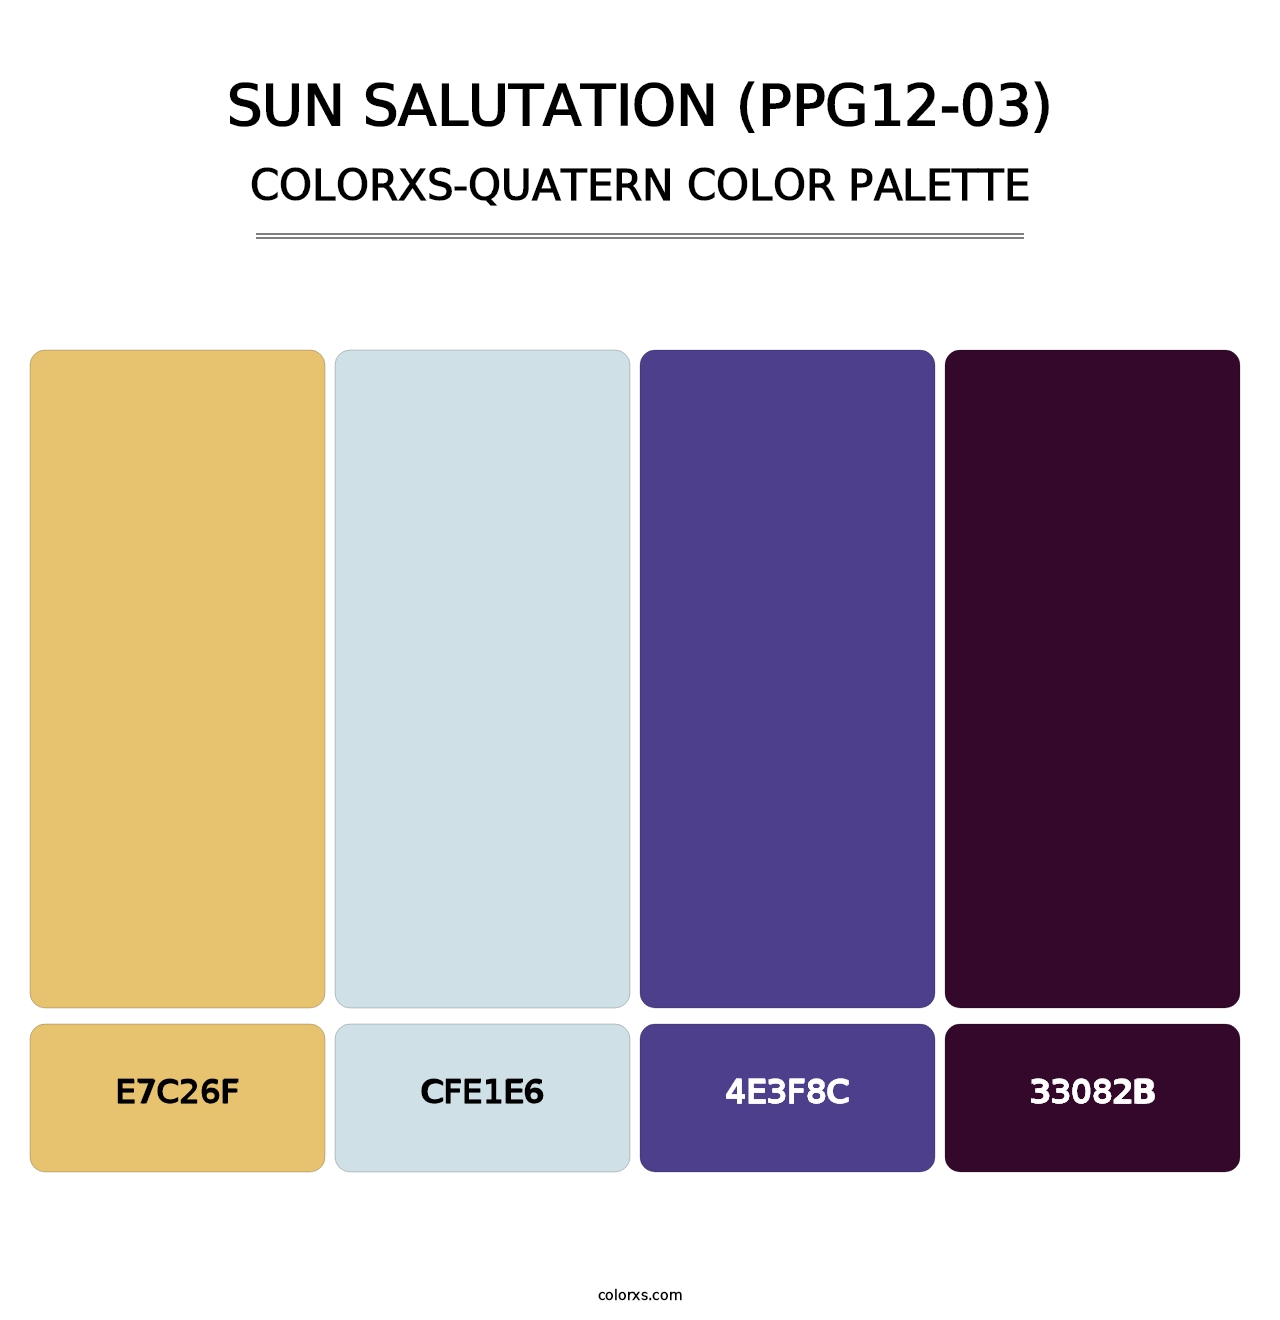 Sun Salutation (PPG12-03) - Colorxs Quatern Palette